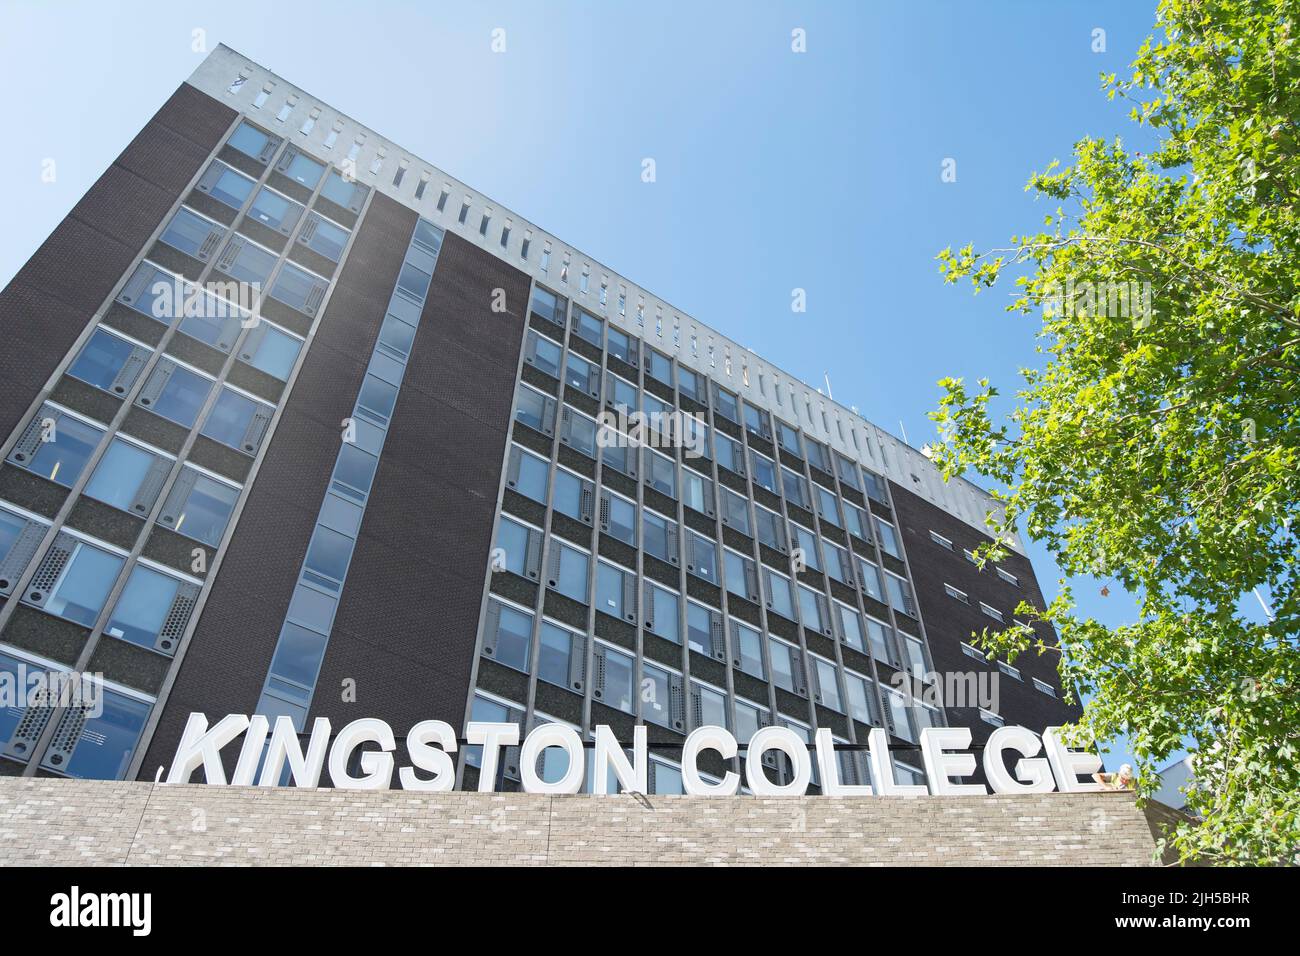 exterior de kingston college, una universidad de educación adicional en kingston upon thames, surrey, inglaterra, con un trabajador en casco sólo visible por un cartel Foto de stock